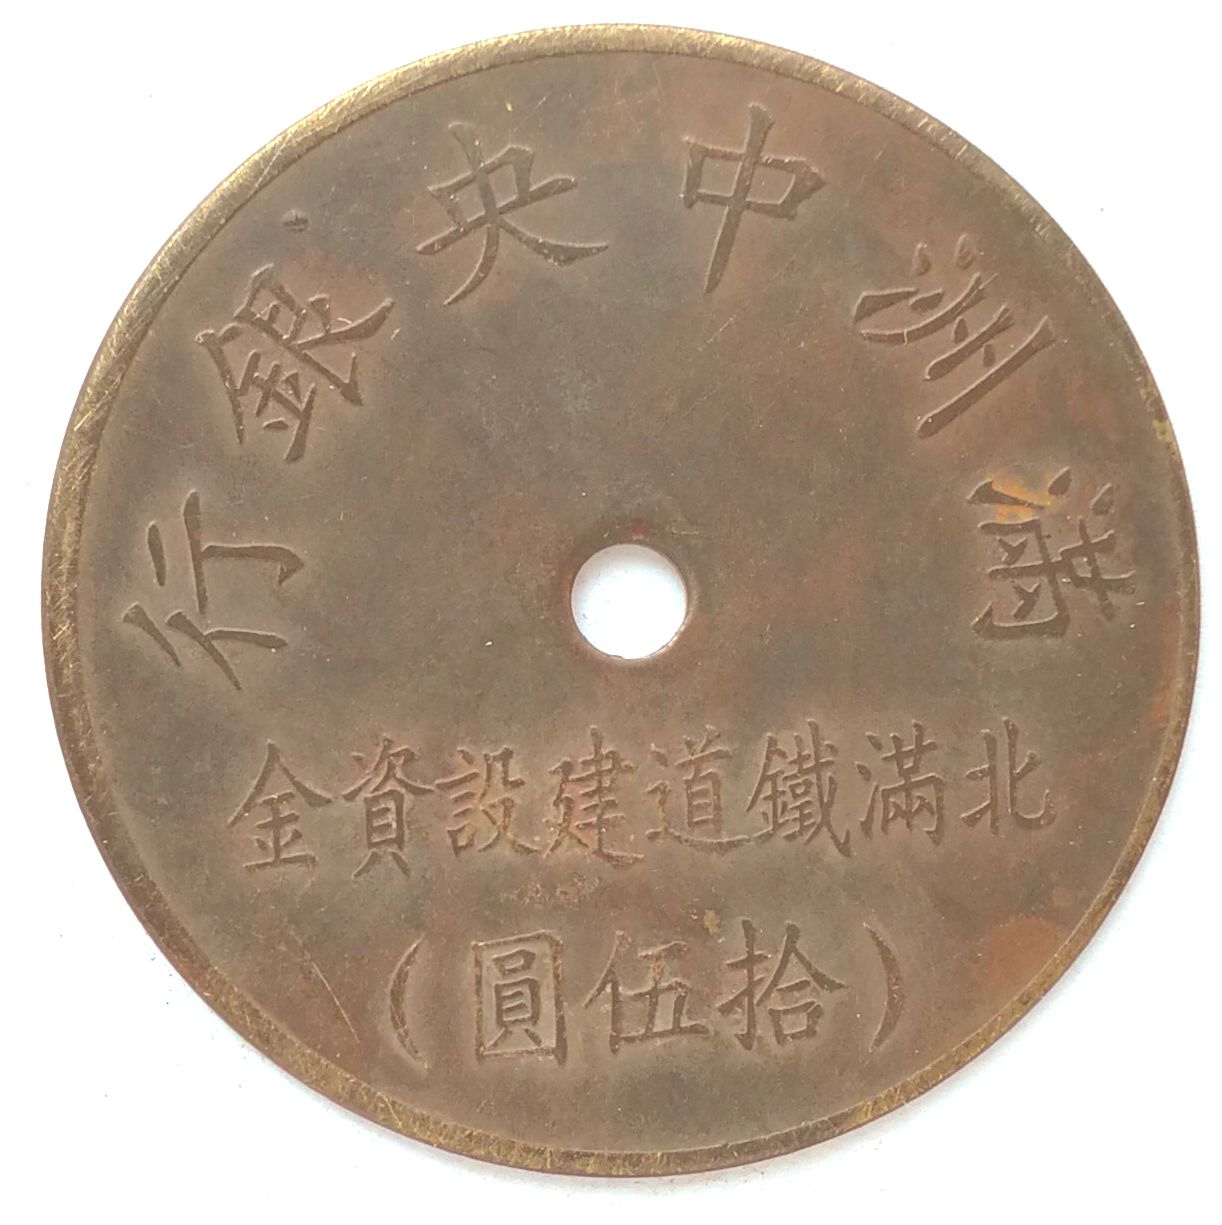 BT471, North Manchukuo Railway Fund, Manchukuo Token, 15 Yen 1944